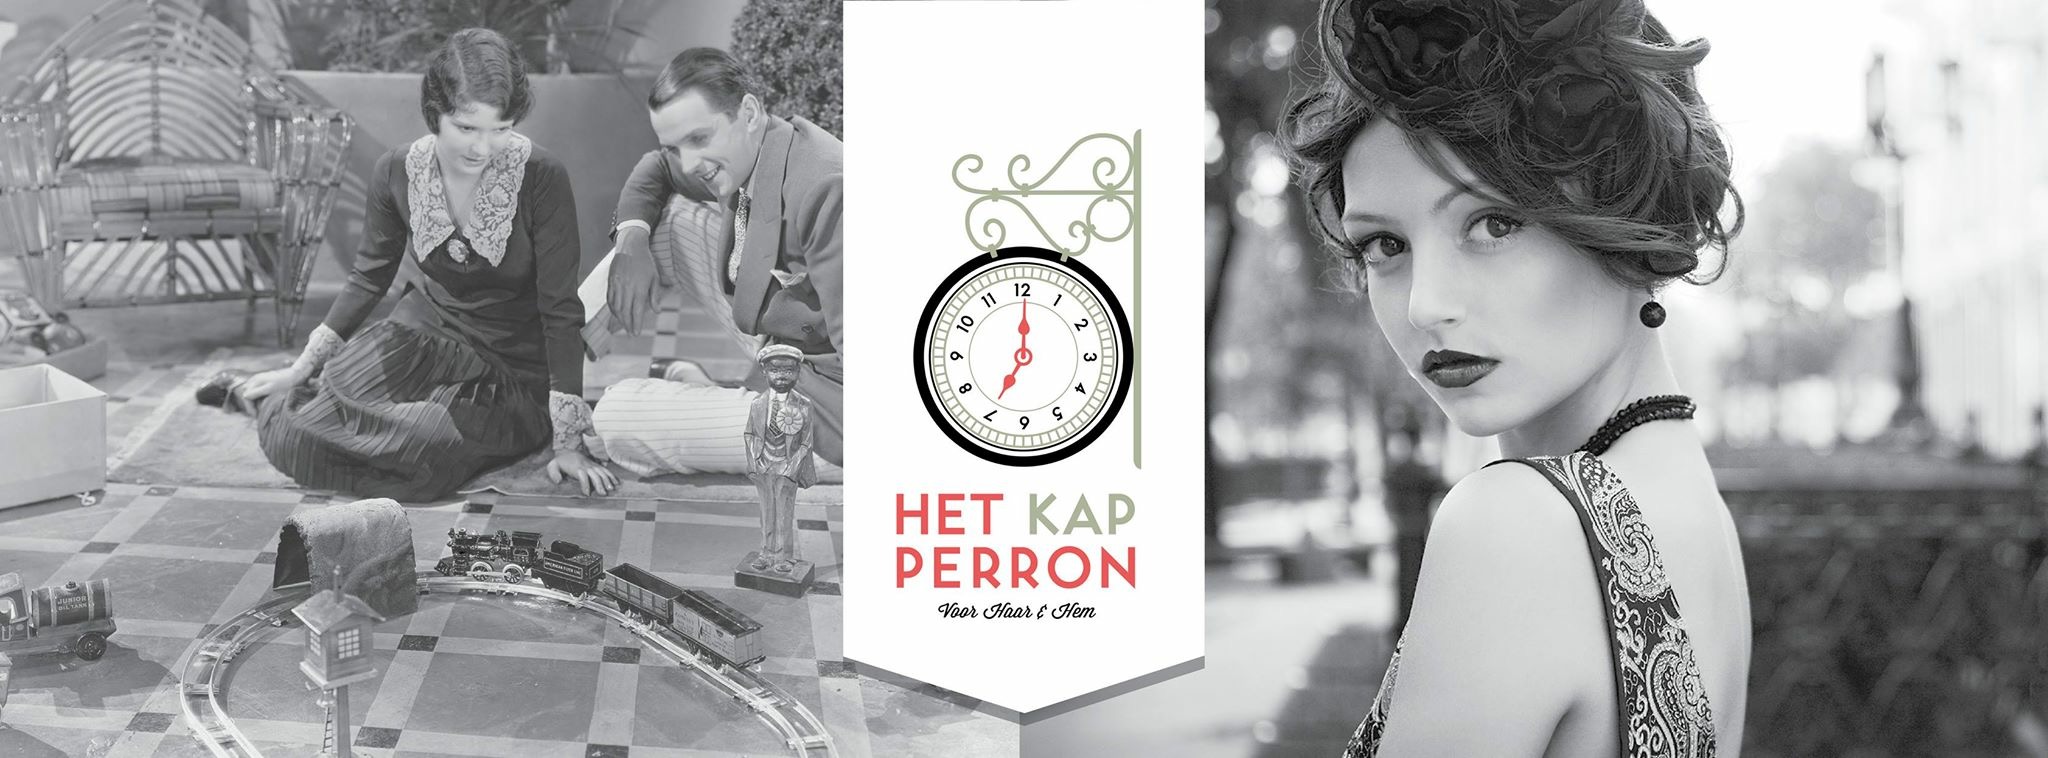 Kapper Leiden - Kapsalon Het Kap Perron